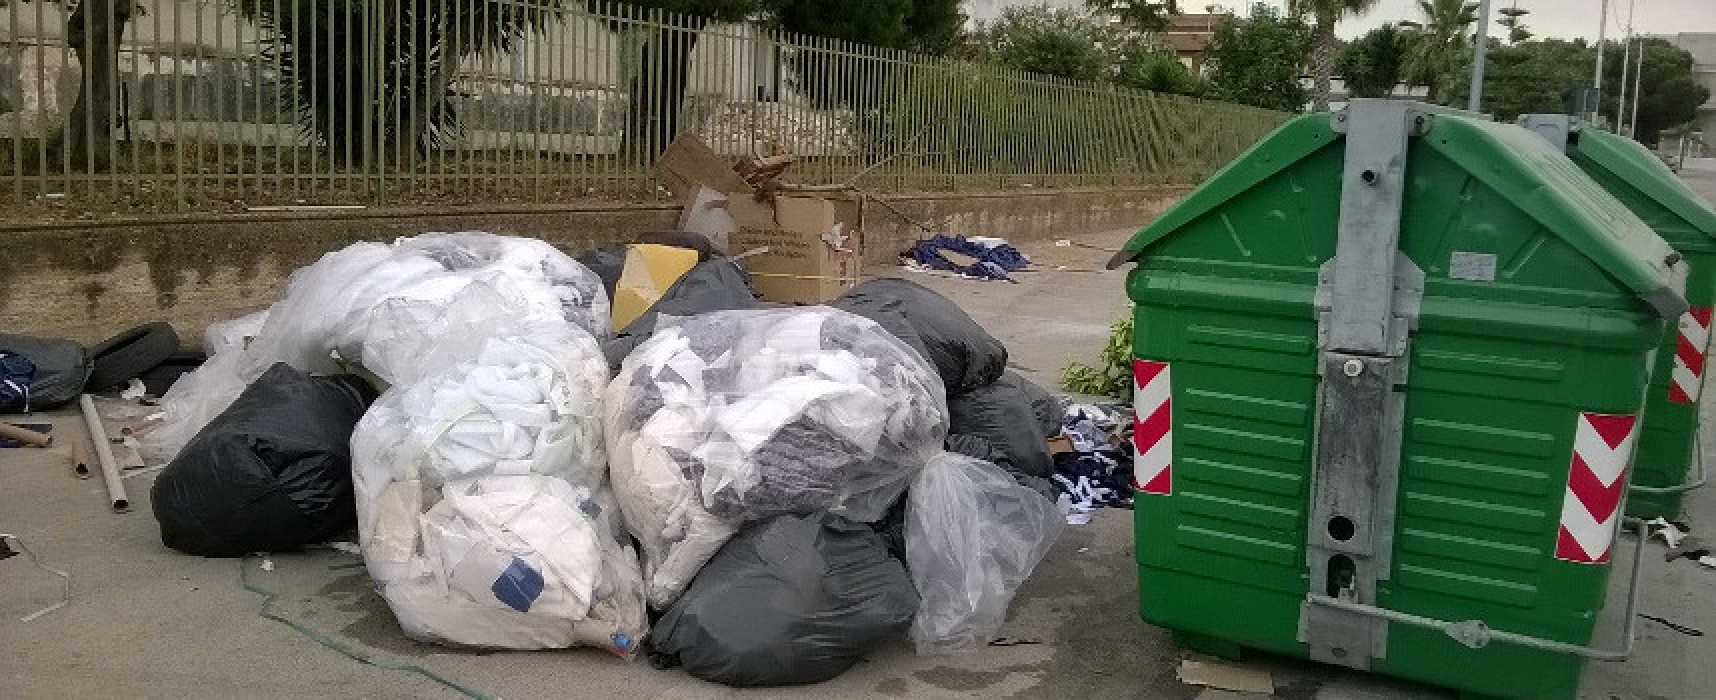 Zona artigianale ovest ancora sommersa dai rifiuti, la denuncia di un residente / FOTO